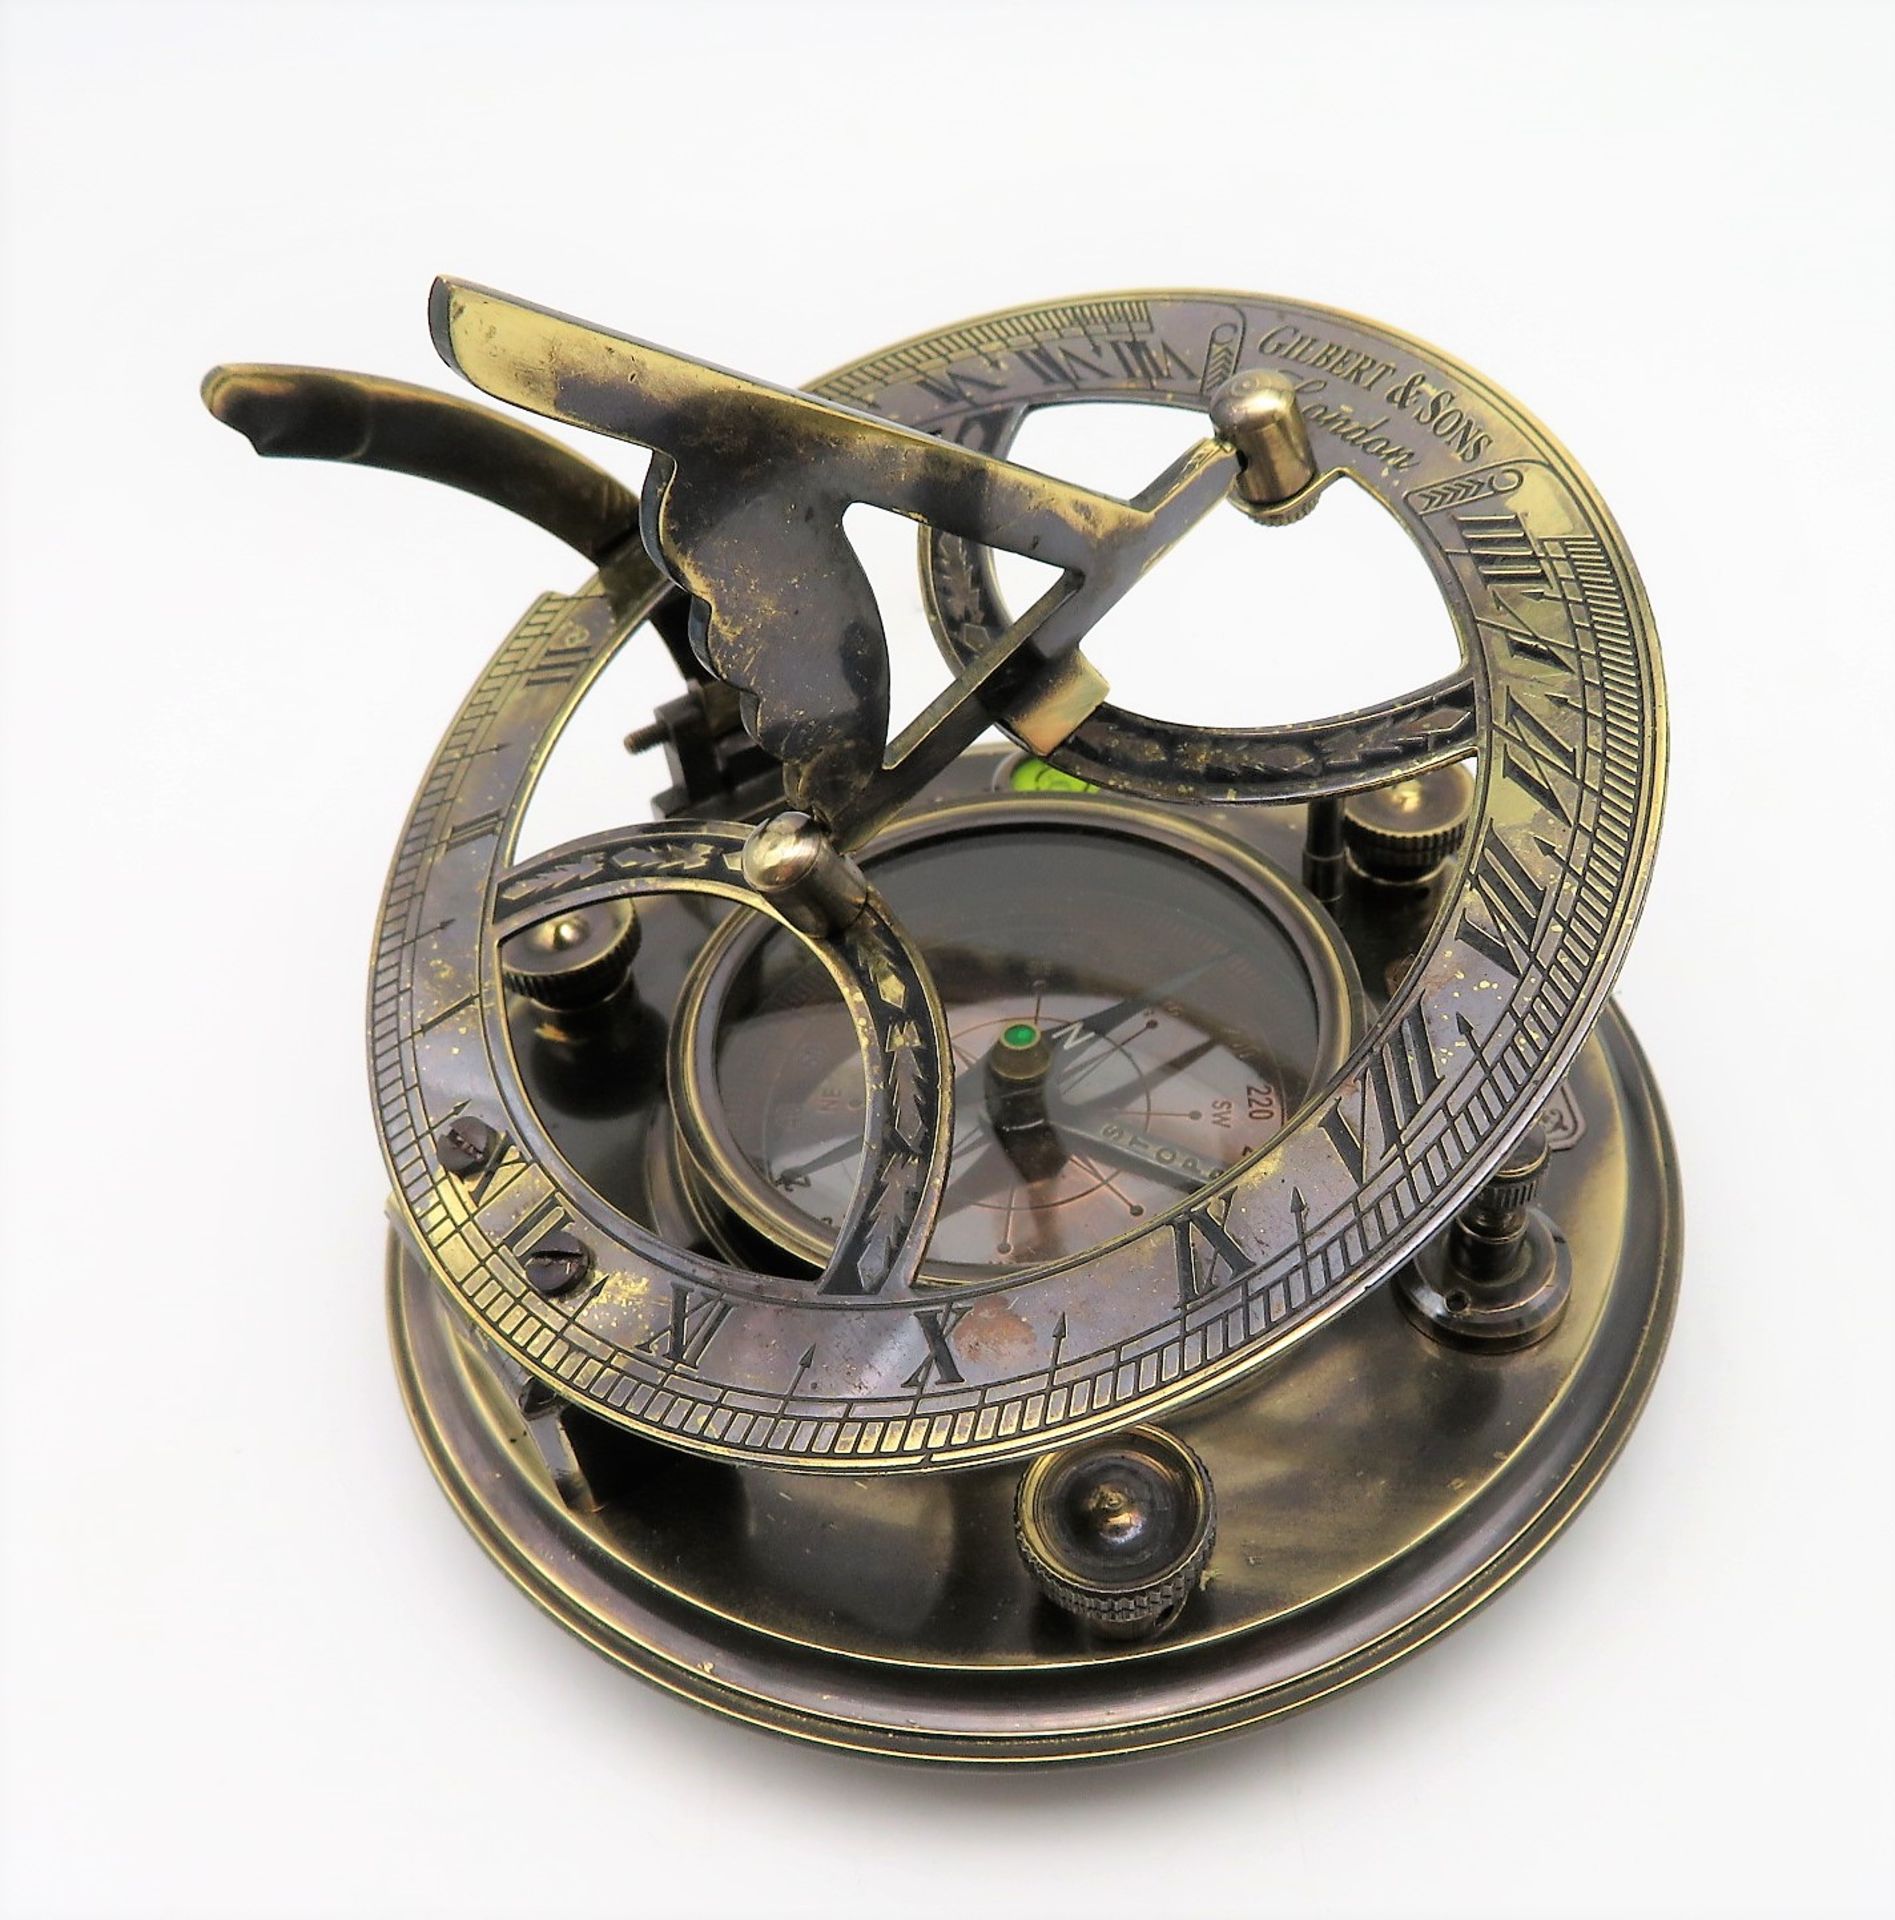 Tischkompass, Gilbert & Sons London, Messing, 20. Jahrhundert, h 11 cm, d 13 cm.